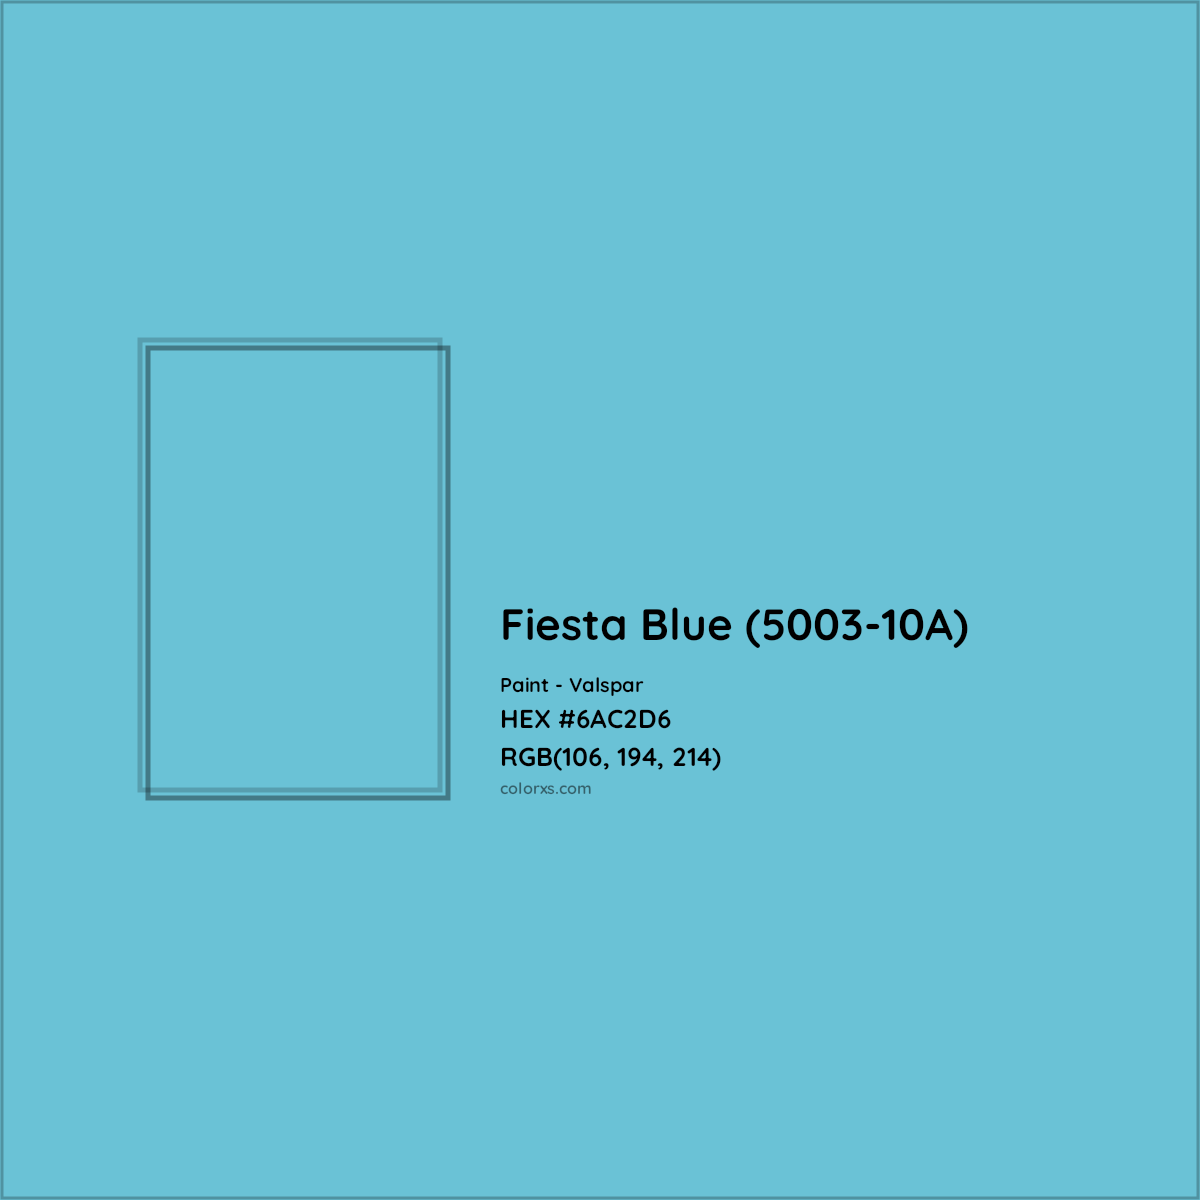 HEX #6AC2D6 Fiesta Blue (5003-10A) Paint Valspar - Color Code